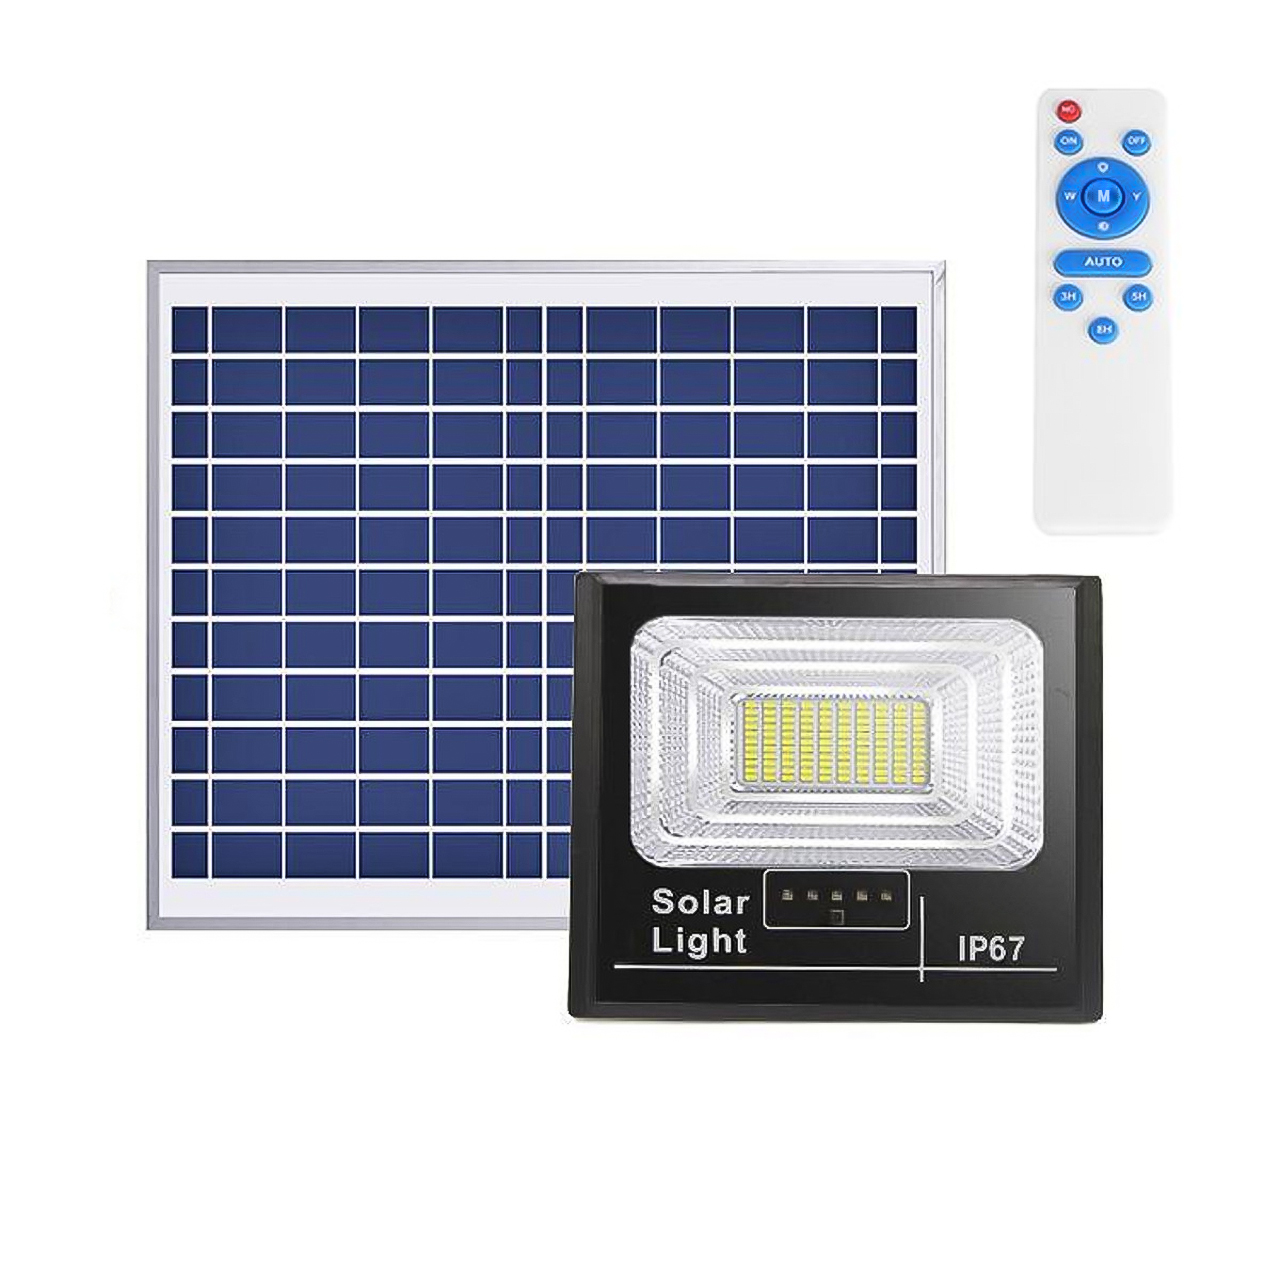 Đèn led năng lượng mặt trời Vinetteam Solar Light 200W, cảm biến hồng ngoại treo tường, chống nước IP67 - hàng nhập khẩu